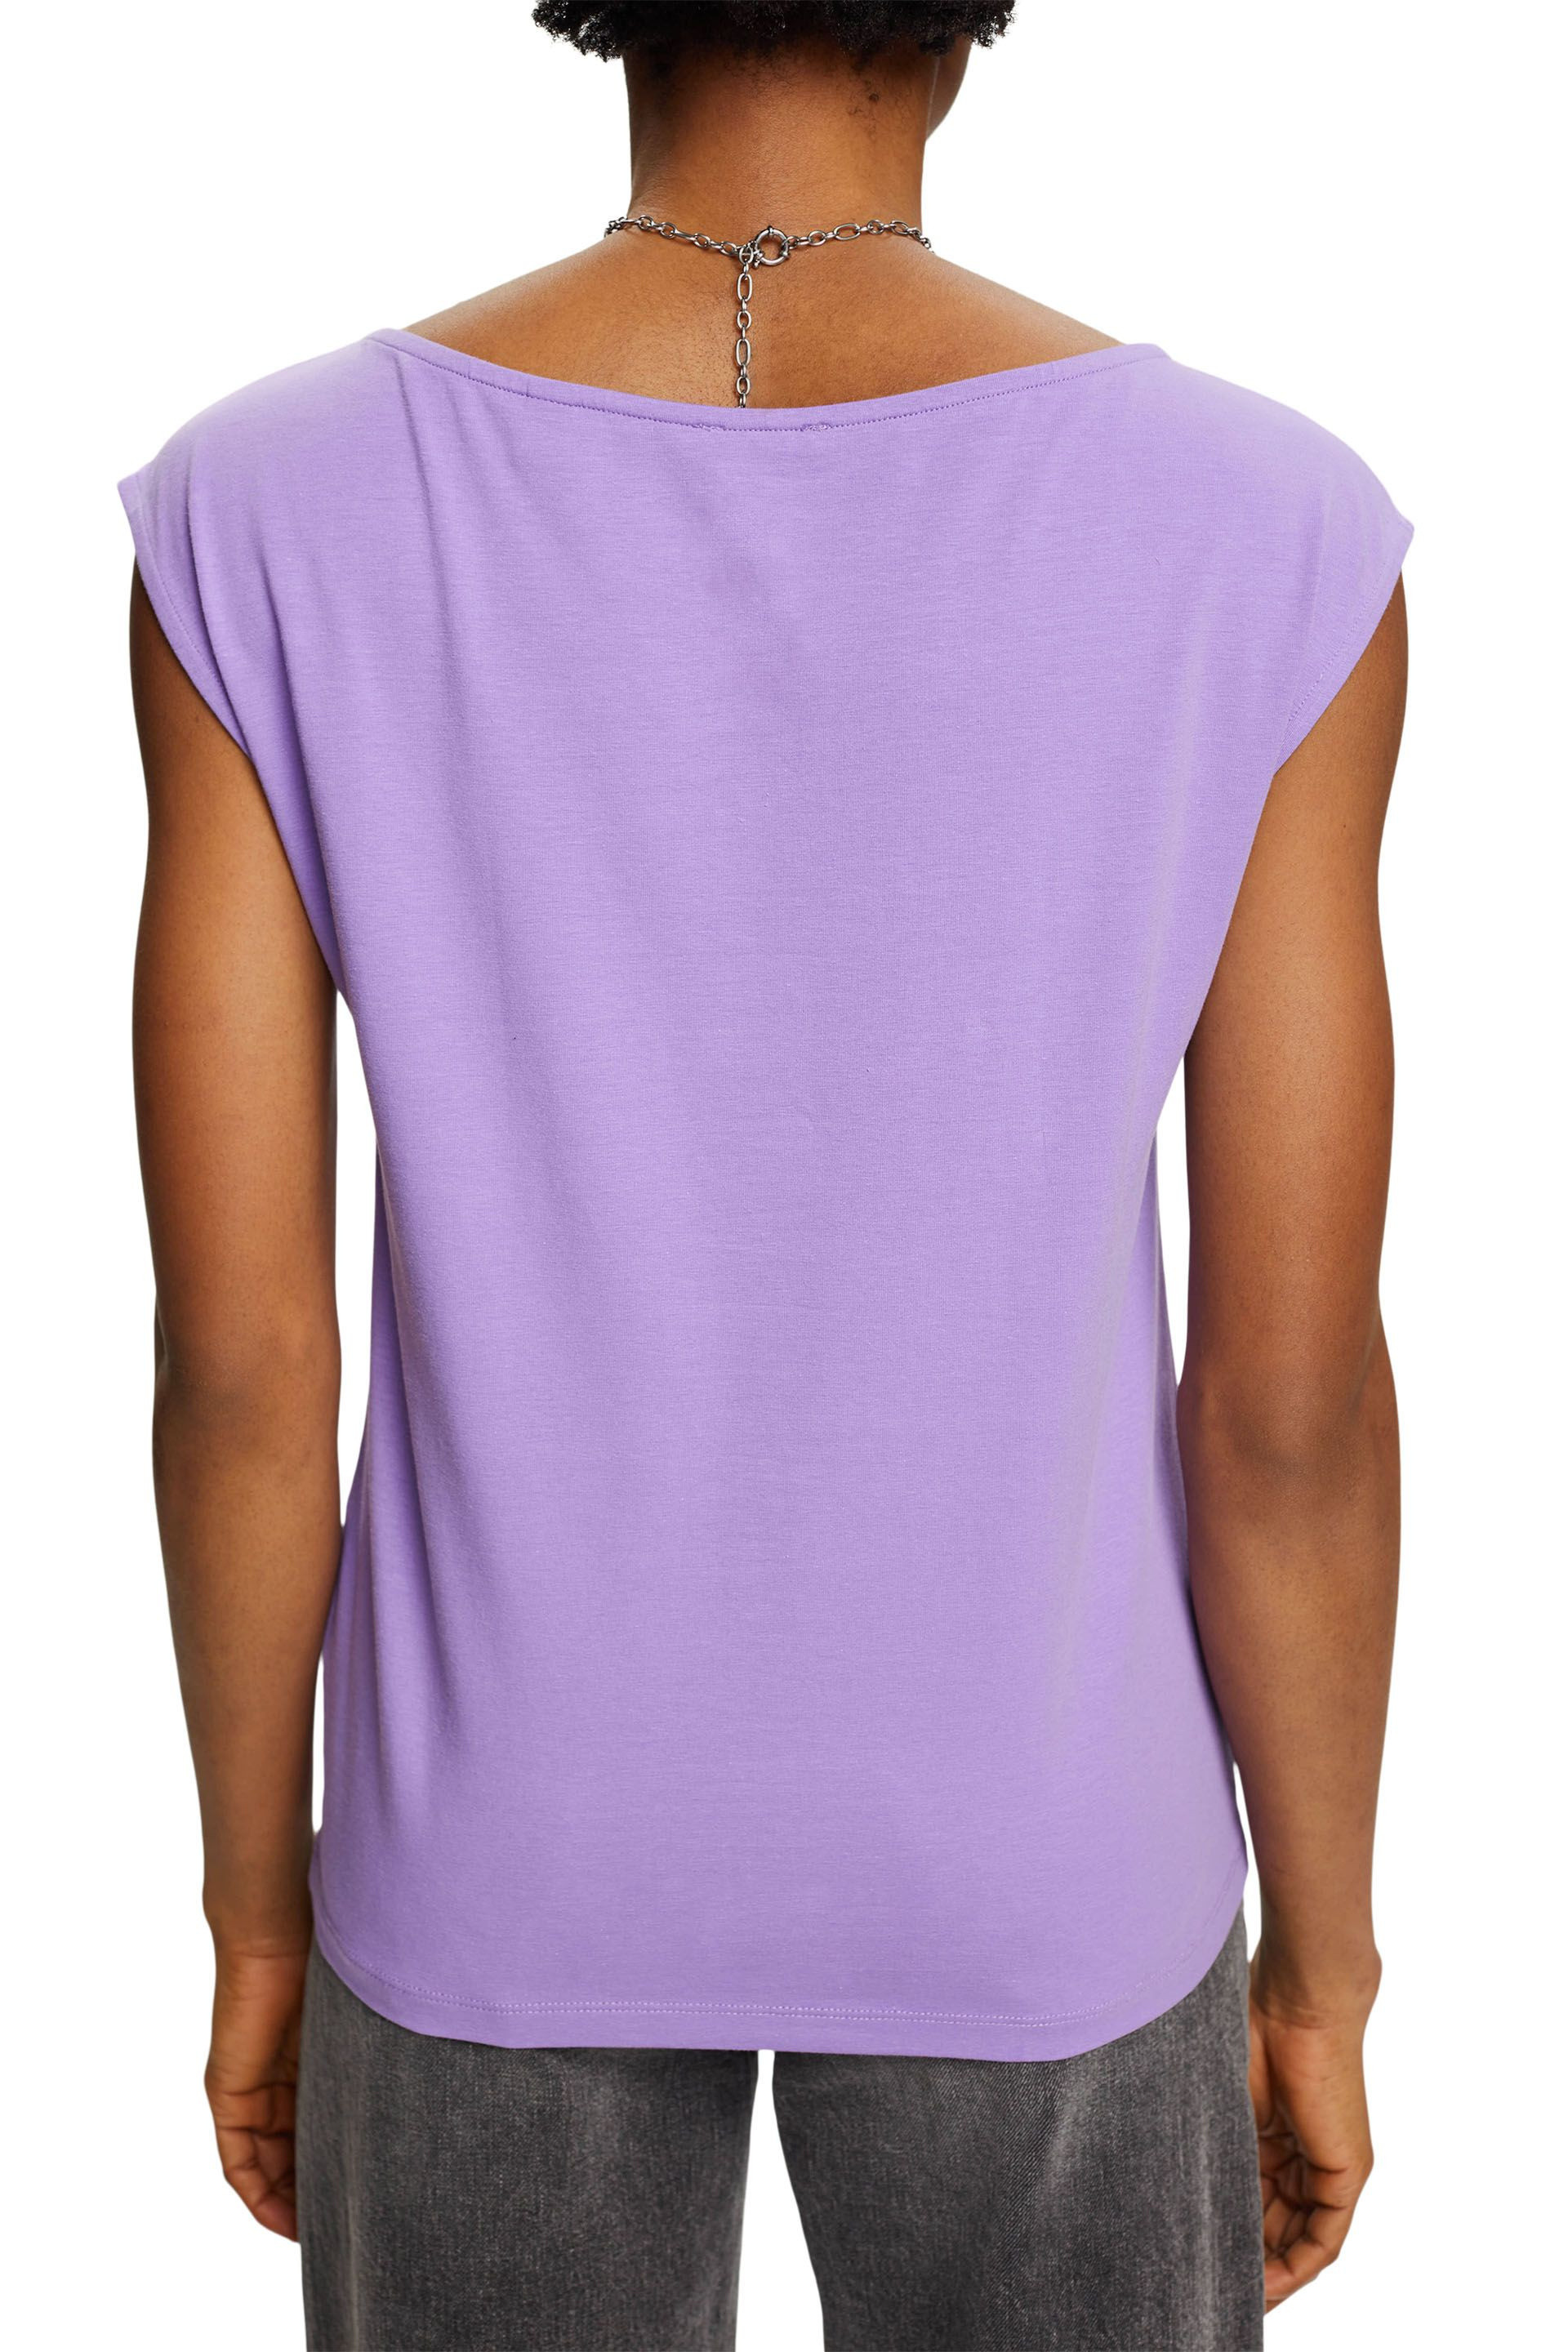 Esprit - Stretch cotton T-shirt, Purple Lilac, large image number 3